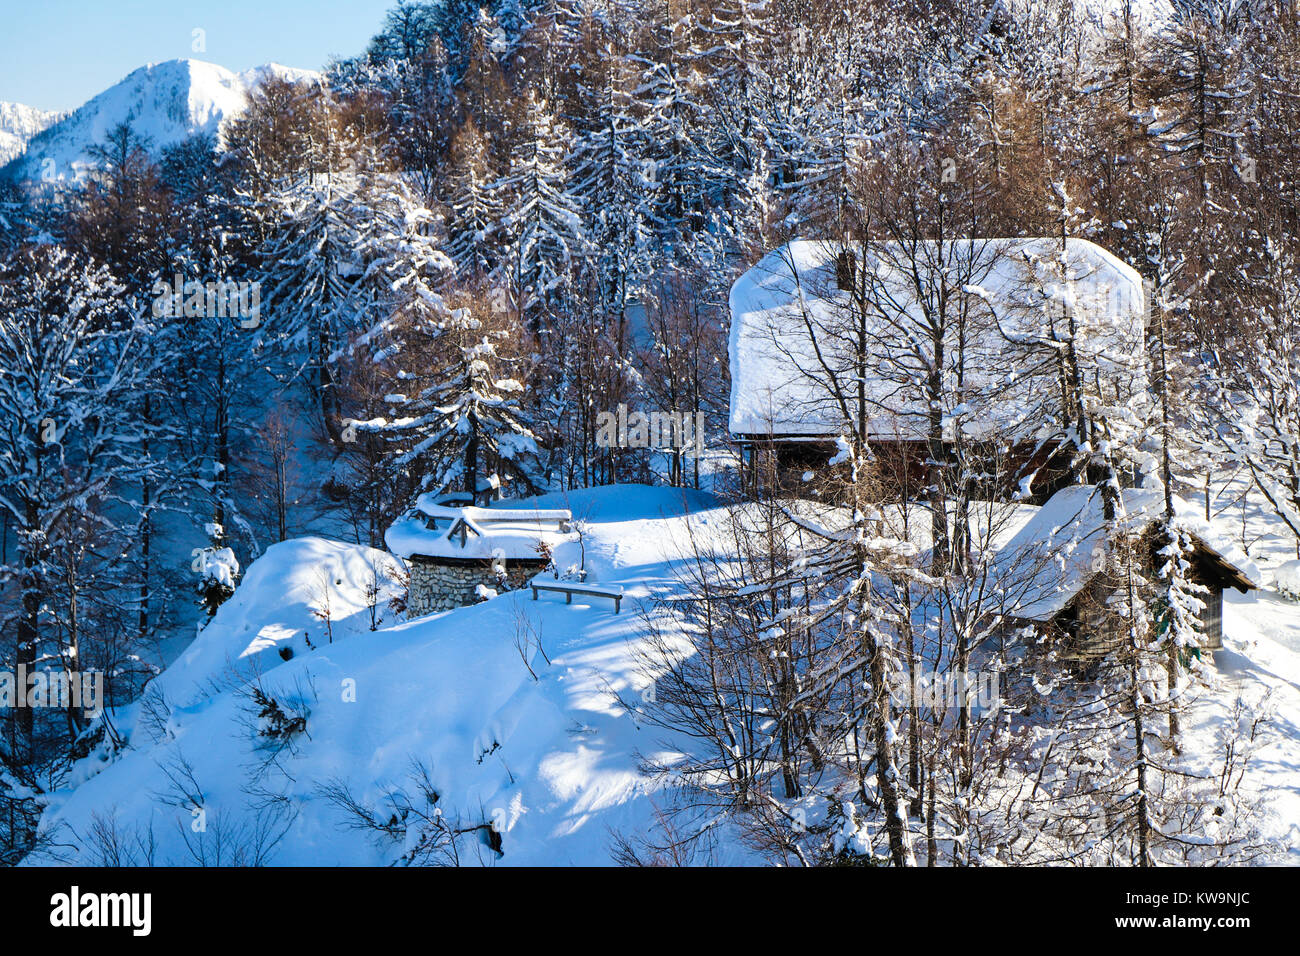 Eine atemberaubende Mountain Lodge in Vogel Ski Resort, Bohinj (Slowenien), in diesem wunderbaren Bild aufgenommen, perfekt zu einer Weihnachtskarte oder Postkarte schmücken. Stockfoto